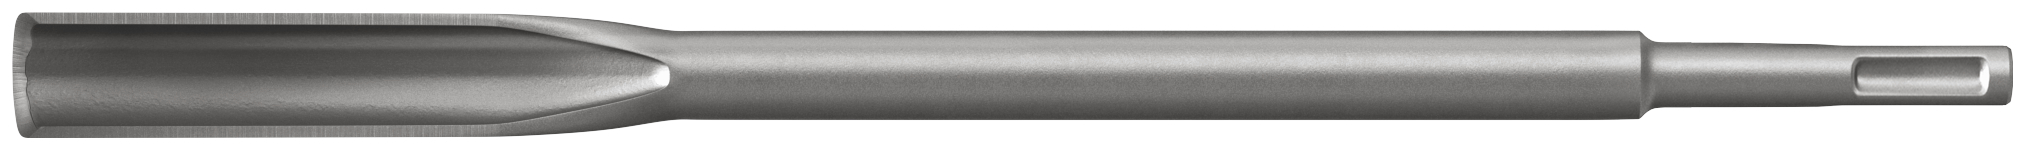 fischer SDS Plus I M-Hohl 22-250 punta martelli perforatori (1 Pz.) Scalpello ad alte prestazioni con attacco SDS Plus e SDS Max fie1626